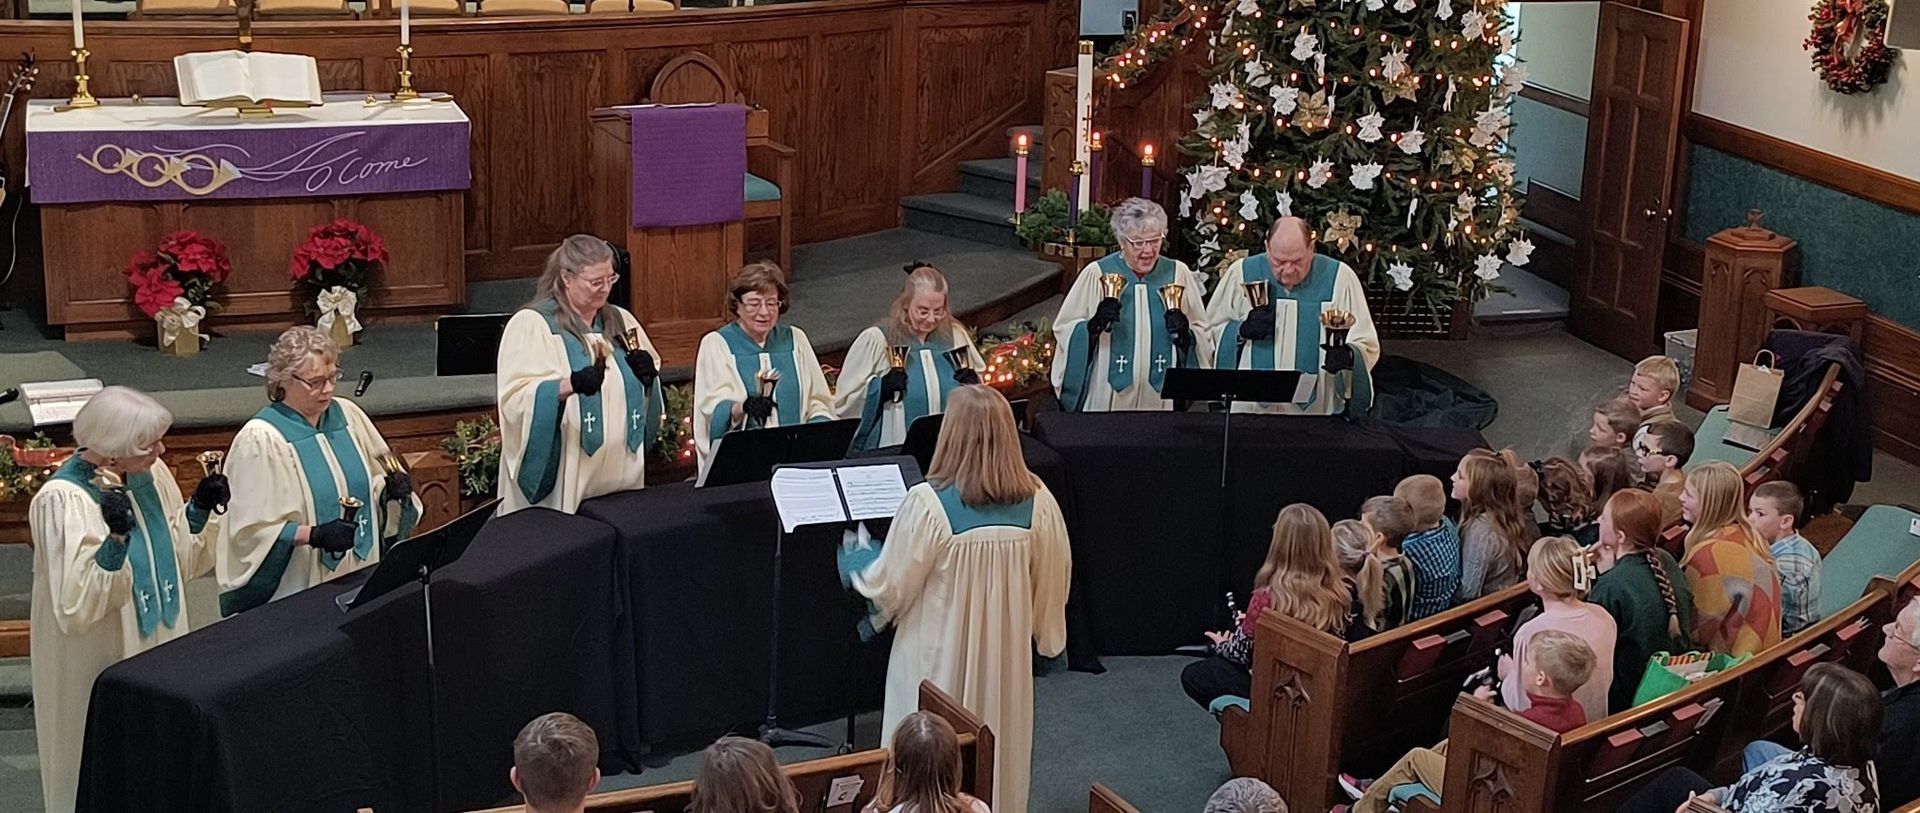 Our bell choir during Christmas at Memorial Methodist Church.